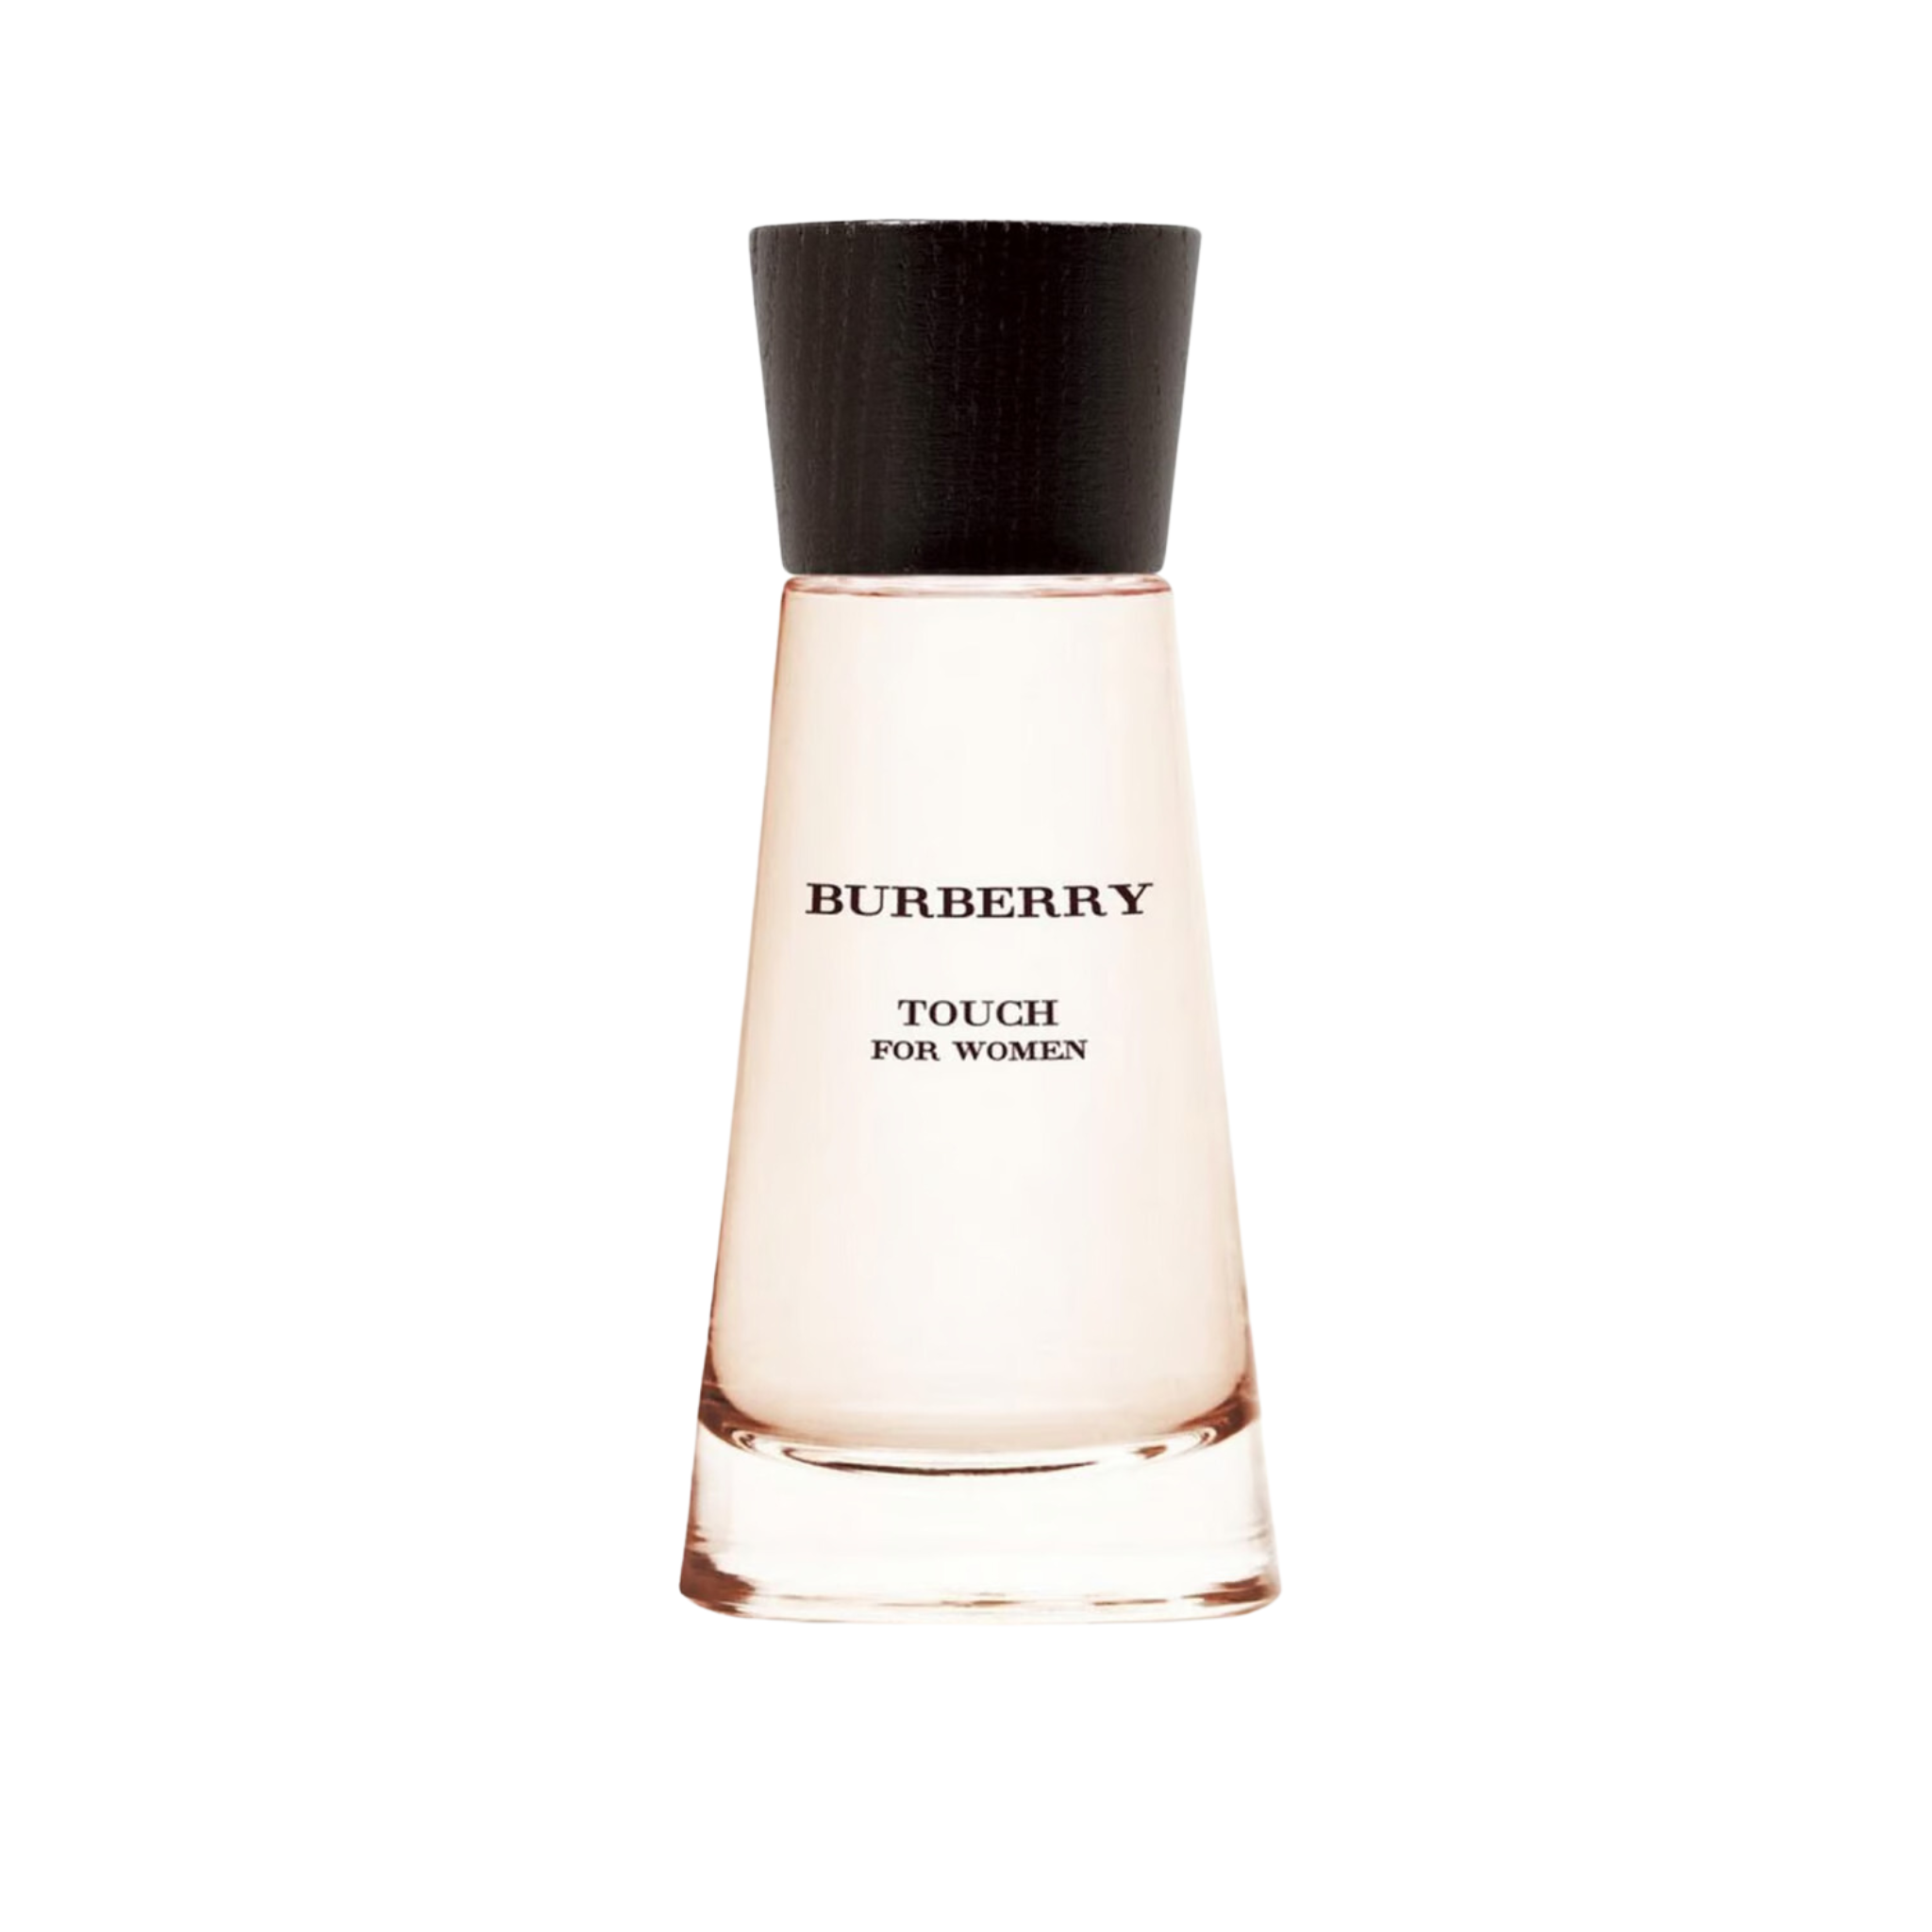 Burberry Touch Eau De Parfum for Women